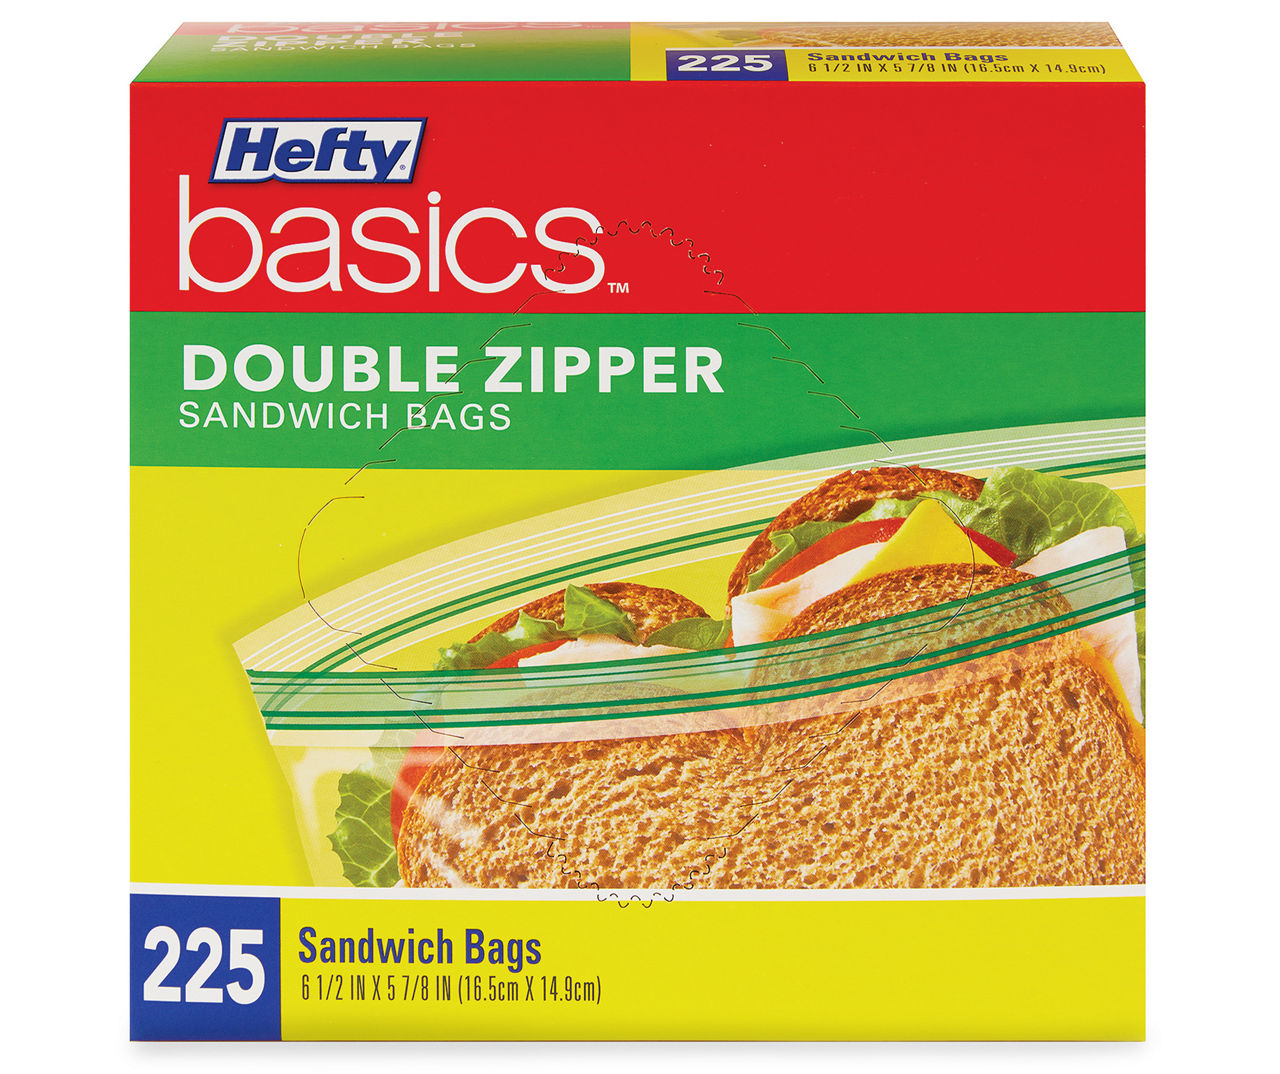  Sensational Zippit Double Zipper Sandwich Bags 200ct